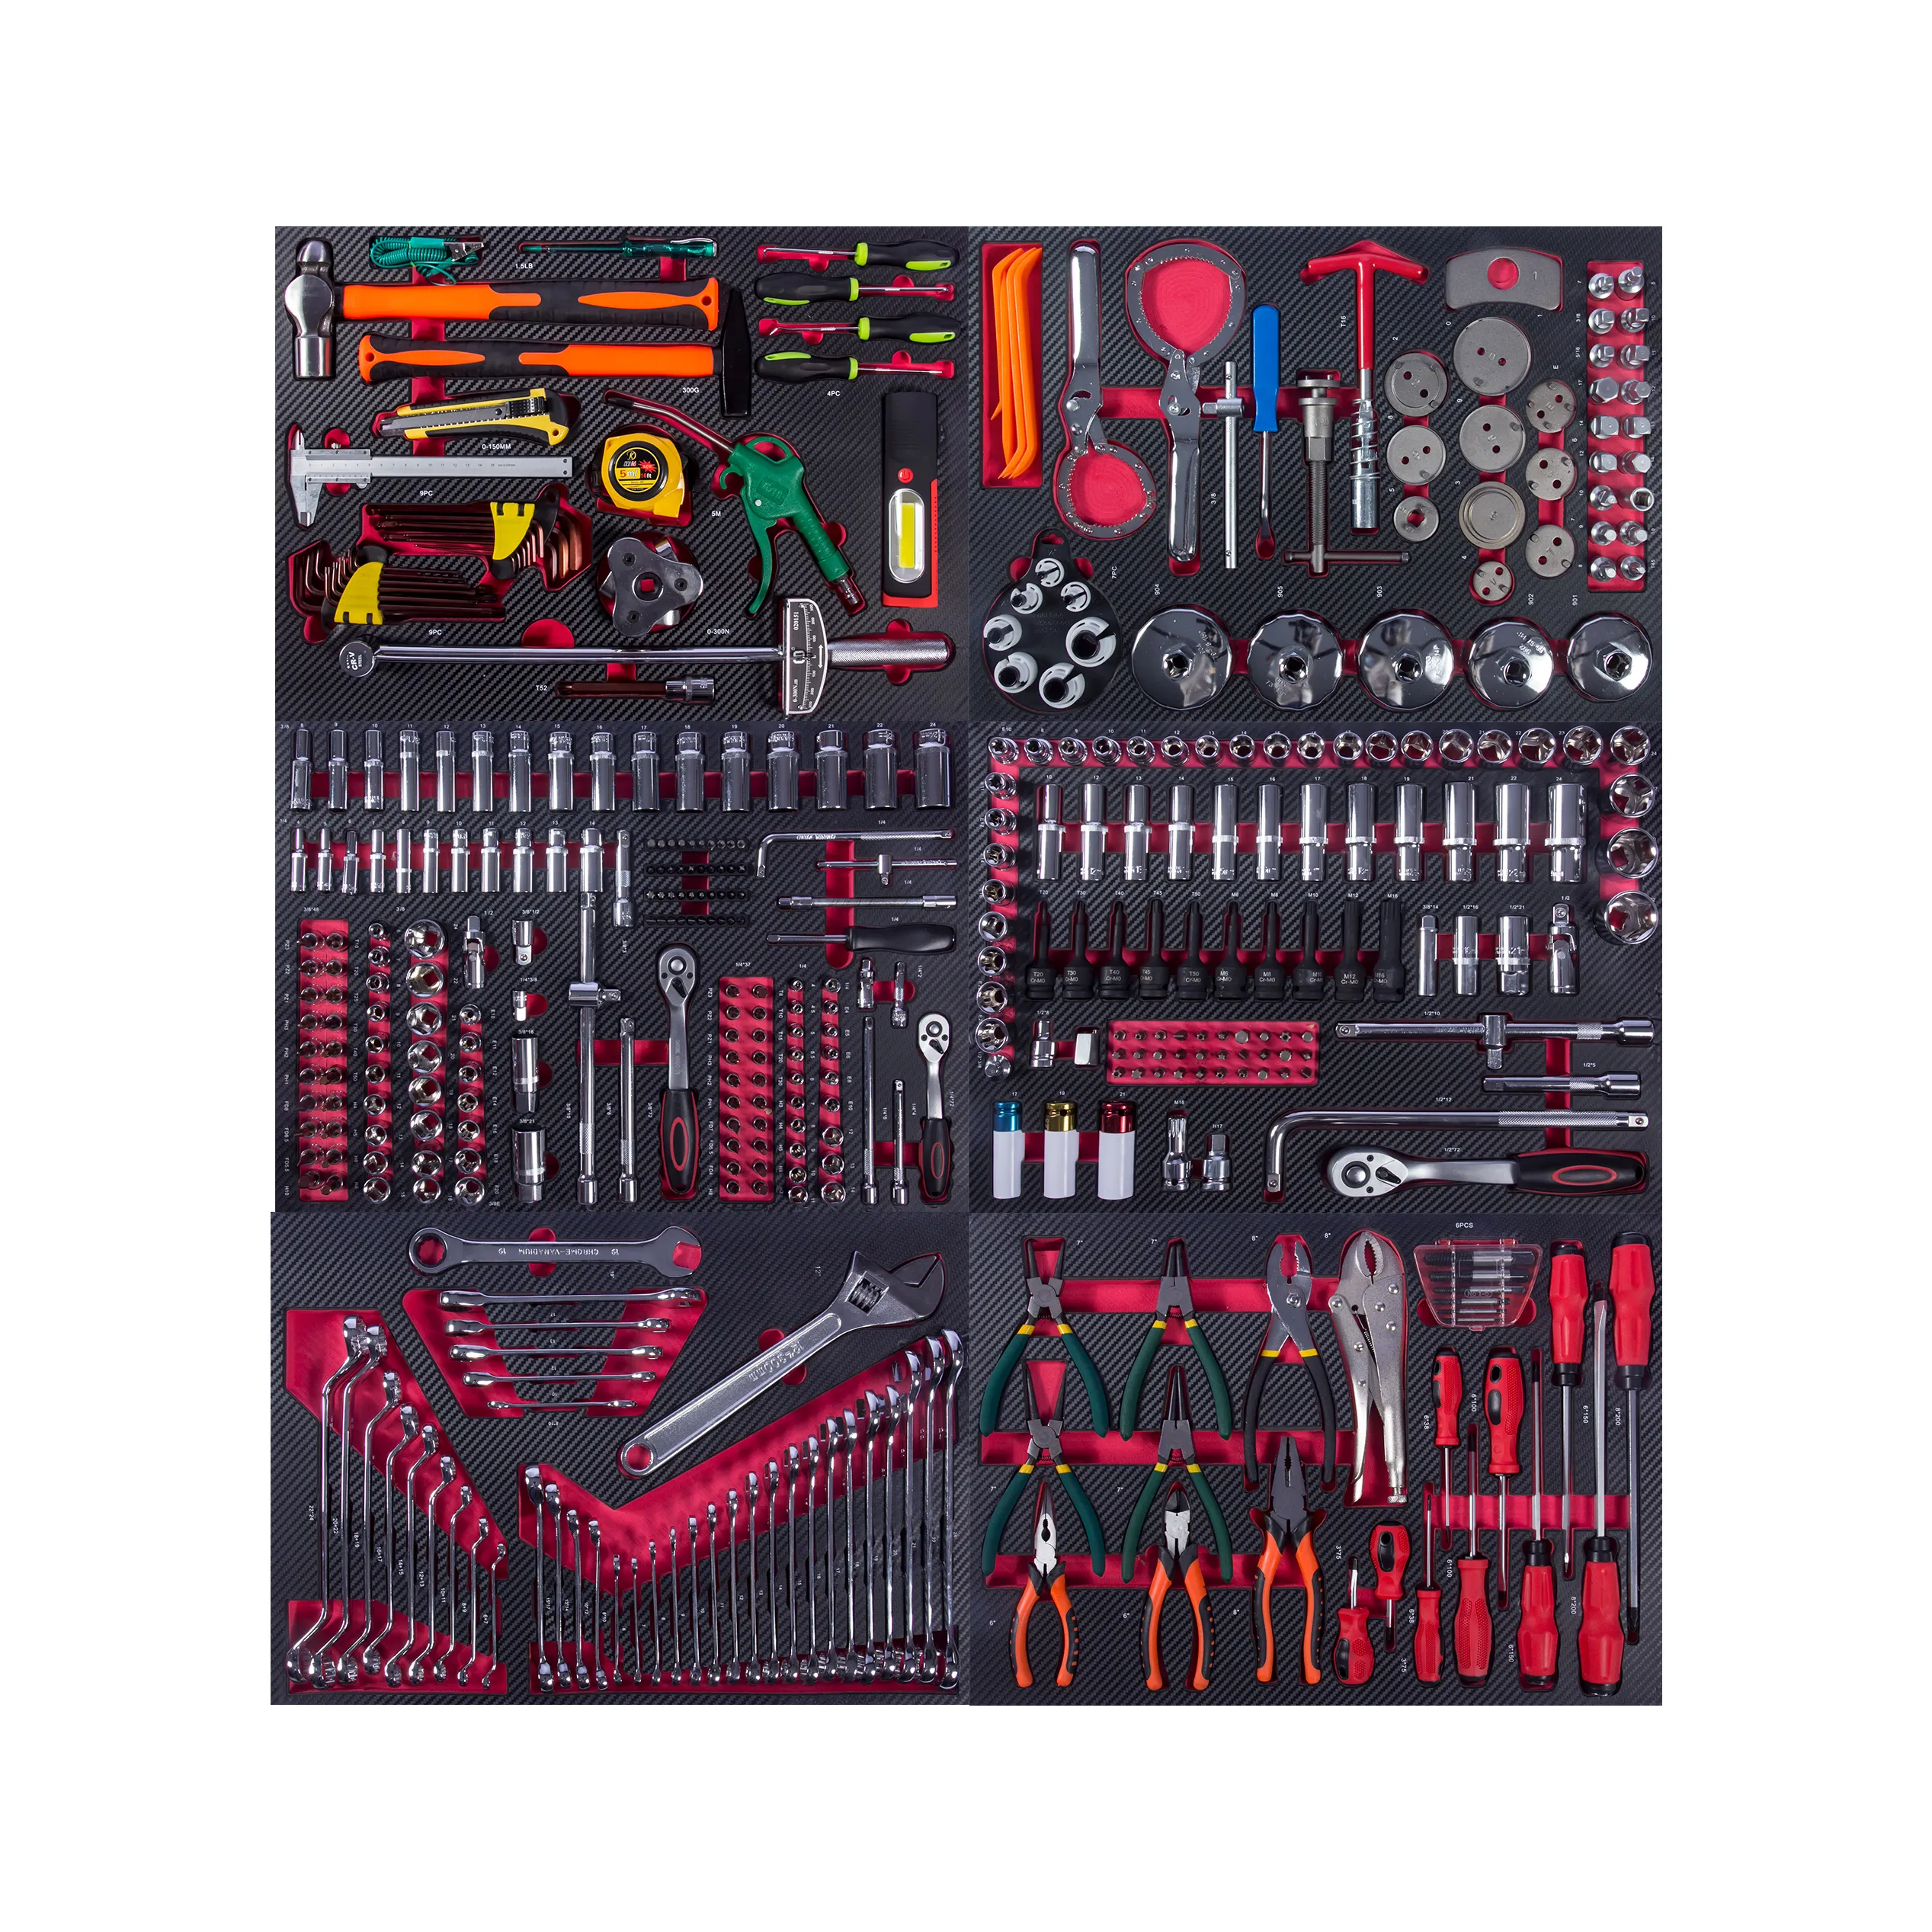 مجموعة أدوات يدوية احترافية من المقابس مصنوعة من مادة Cr-v تحتوي على 421 قطعة طقم أدوات لإصلاح الآلات